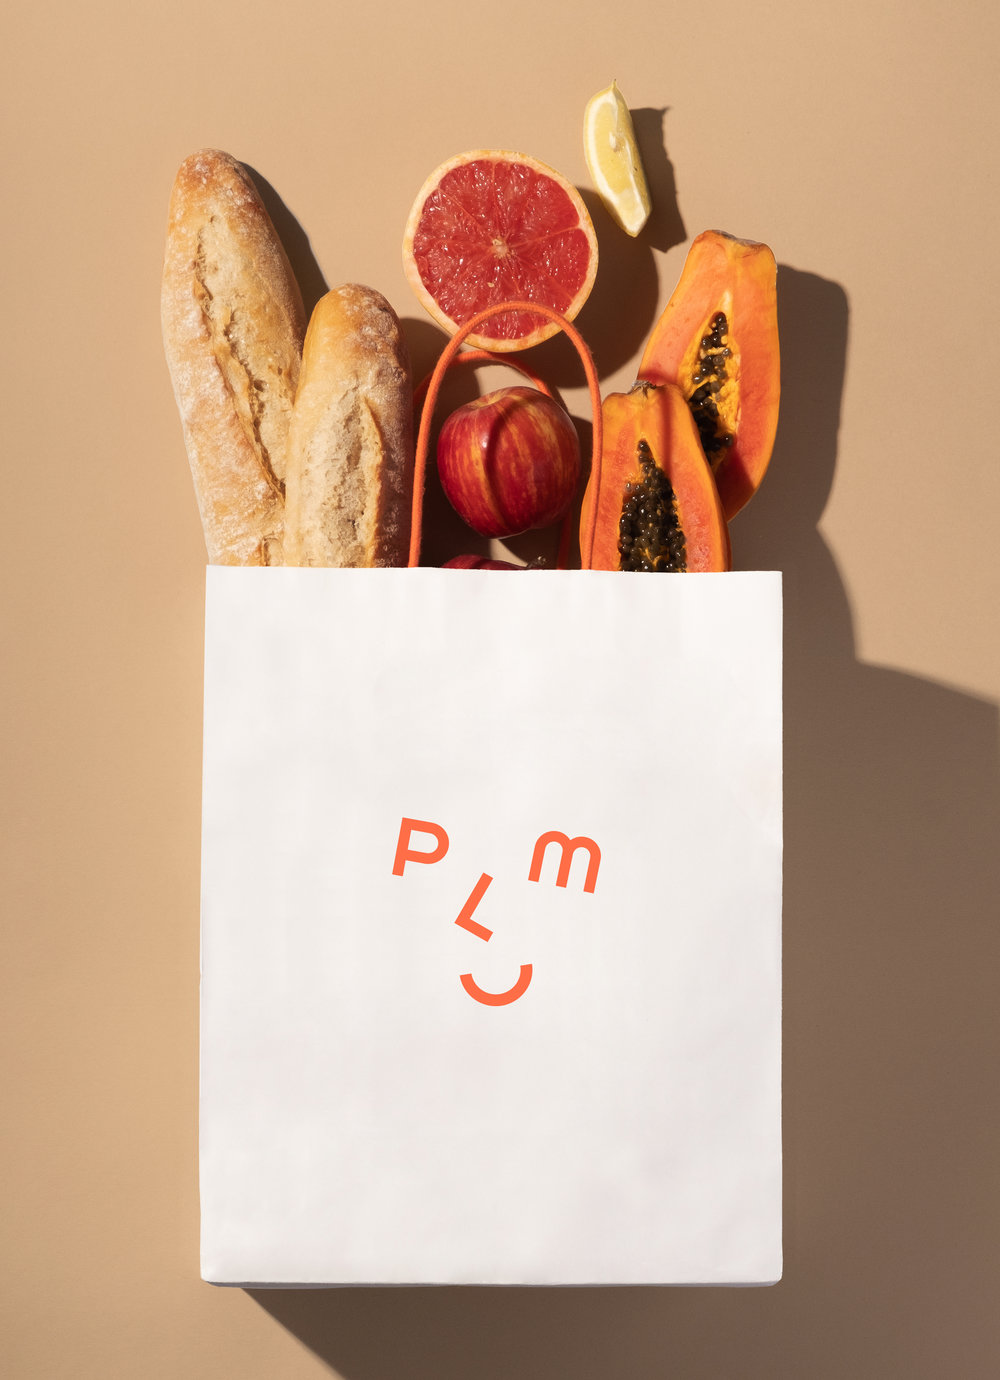 送餐服务平台PLUM品牌视觉设计